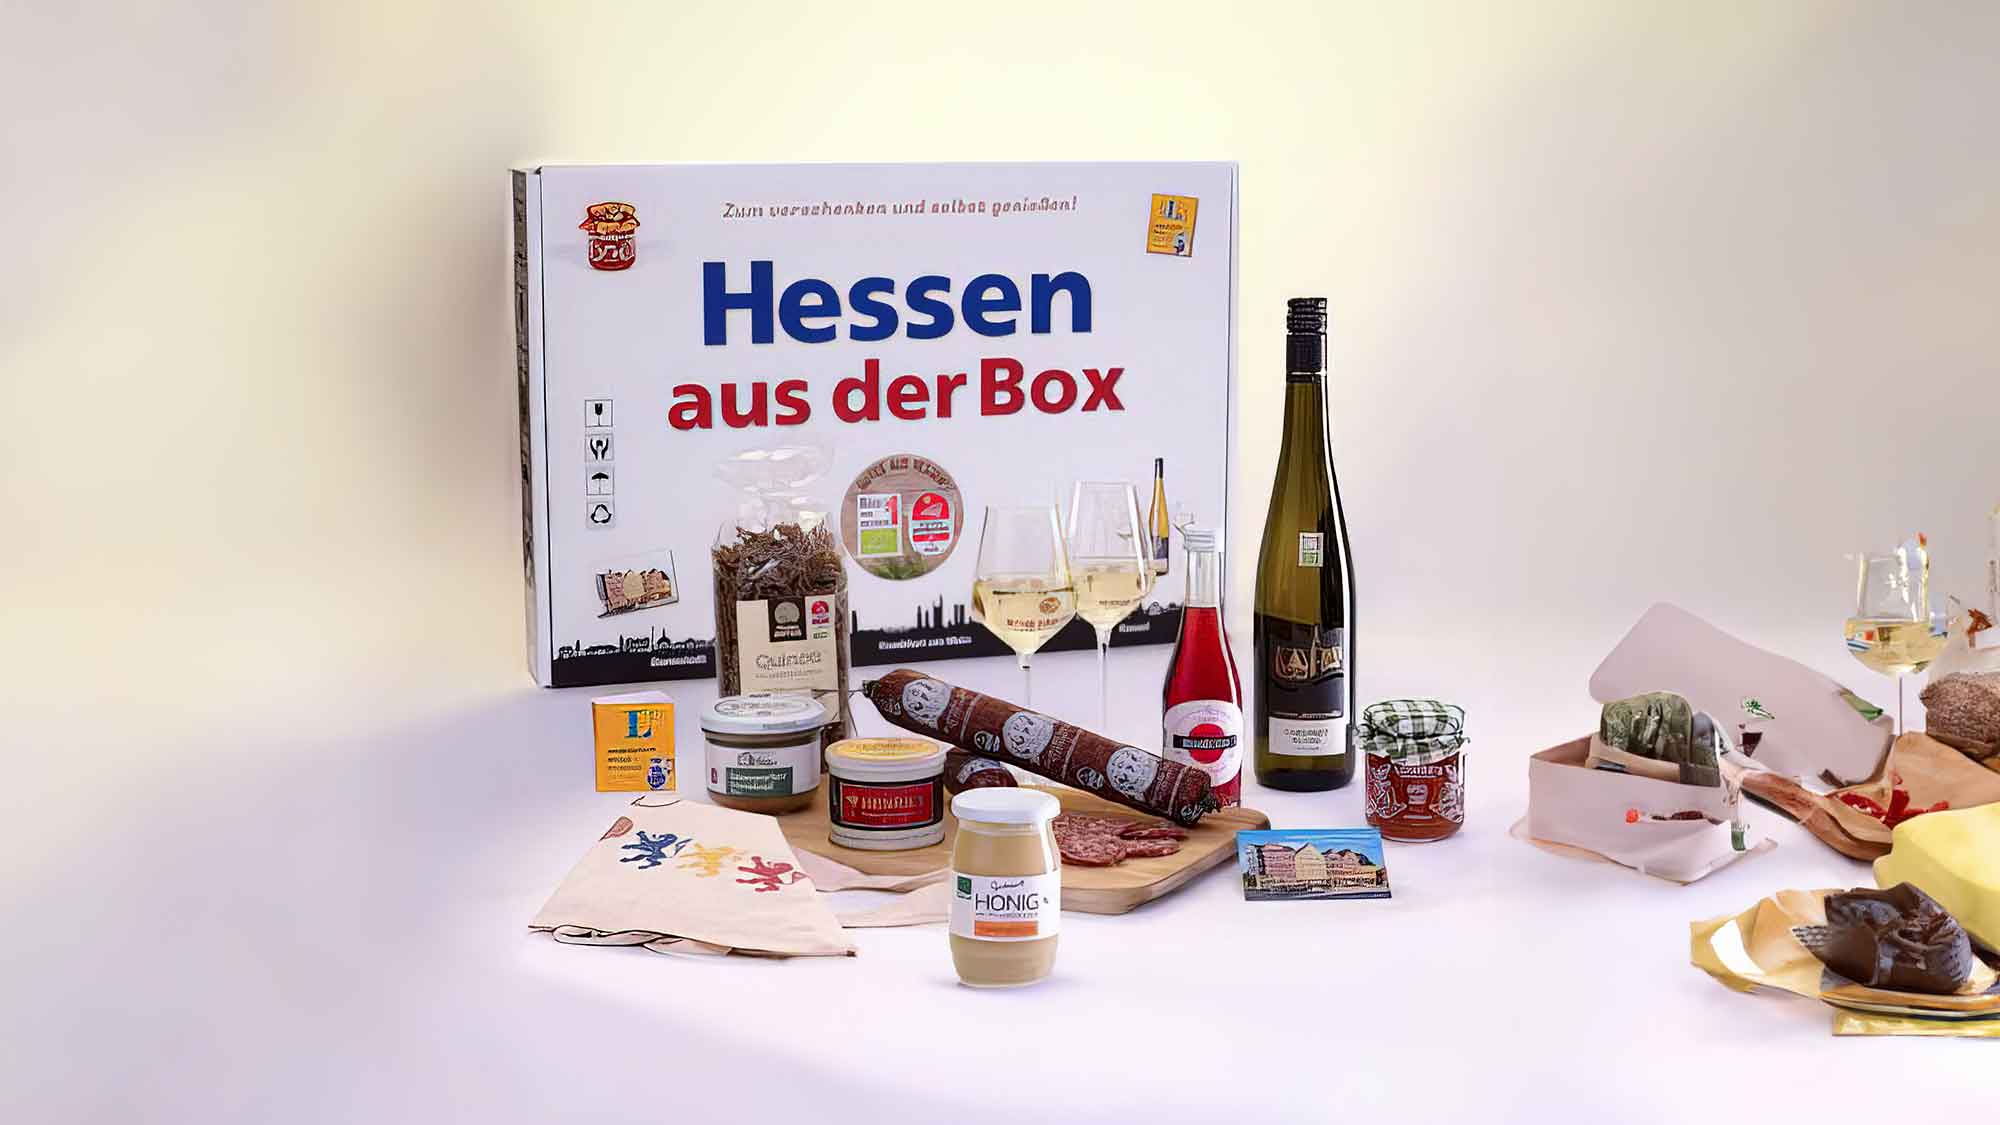 Hessen aus der Box: Ein neuer Onlineshop präsentiert hochwertige Geschenkboxen mit hessischen Spezialitäten